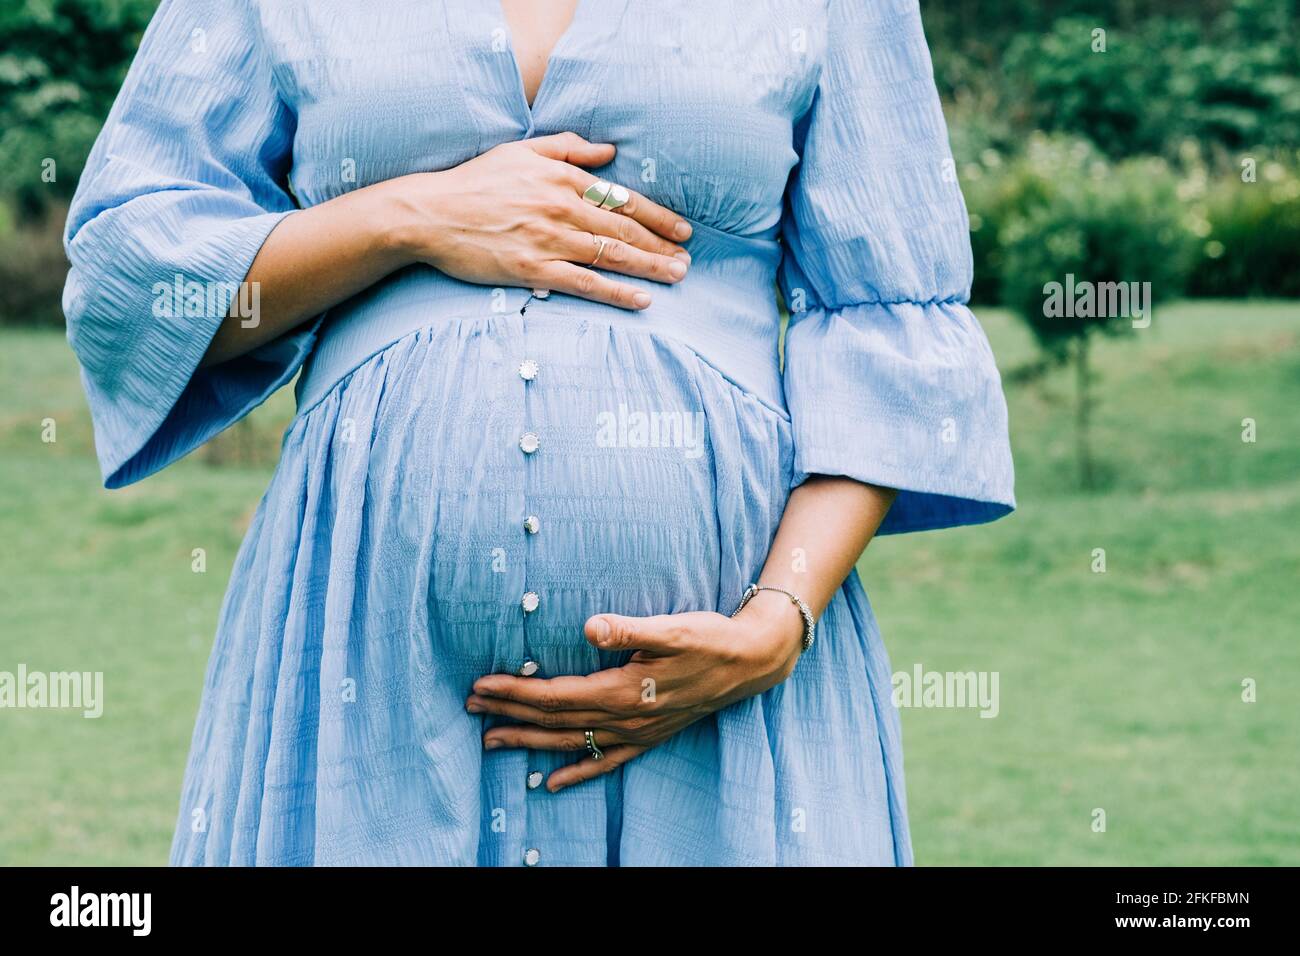 Femme enceinte méconnue qui tient son ventre pendant le troisième trimestre Banque D'Images